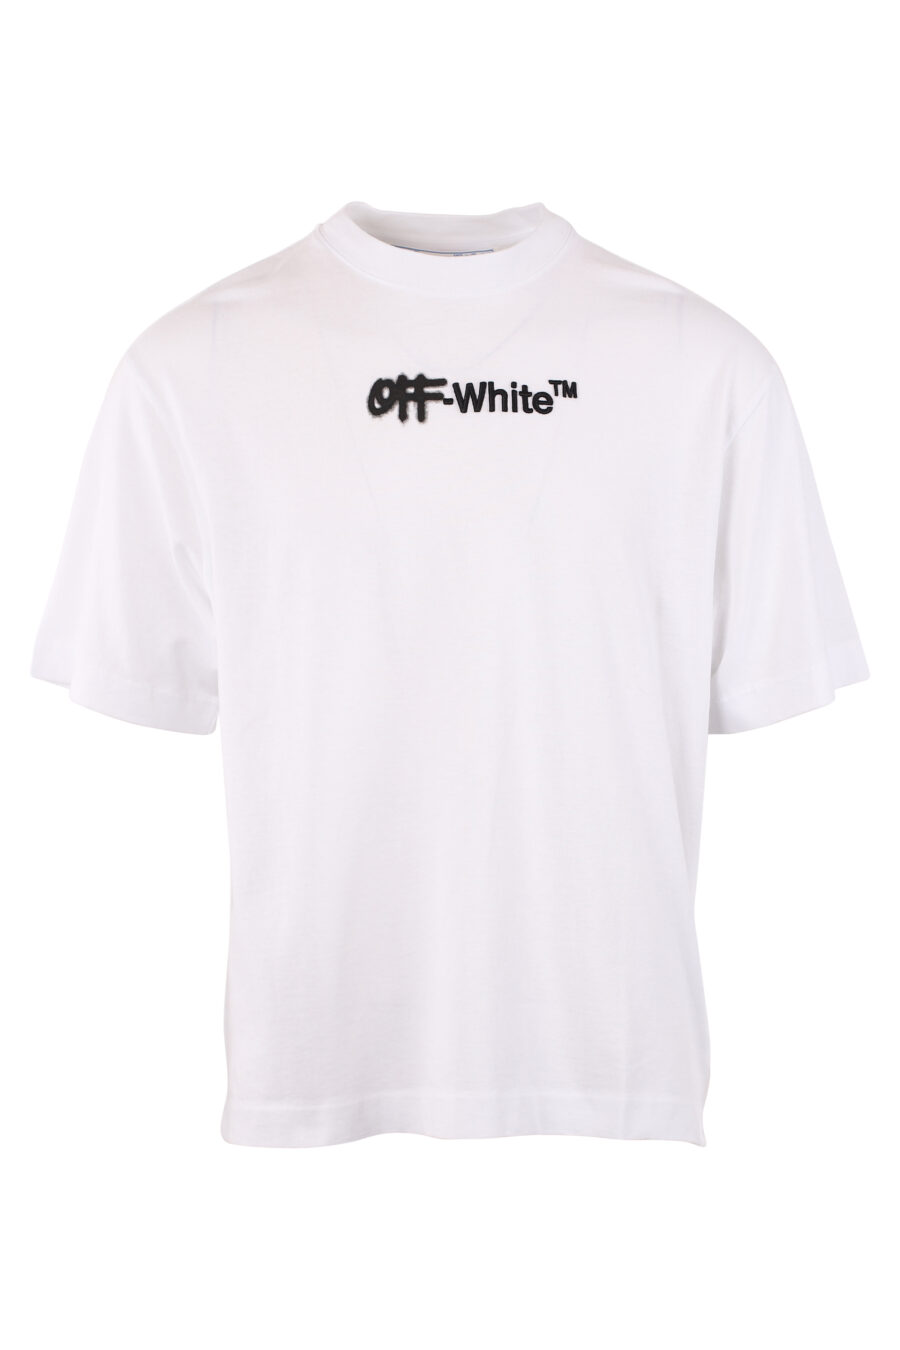 T-shirt branca de tamanho grande "Spray" - IMG 1509